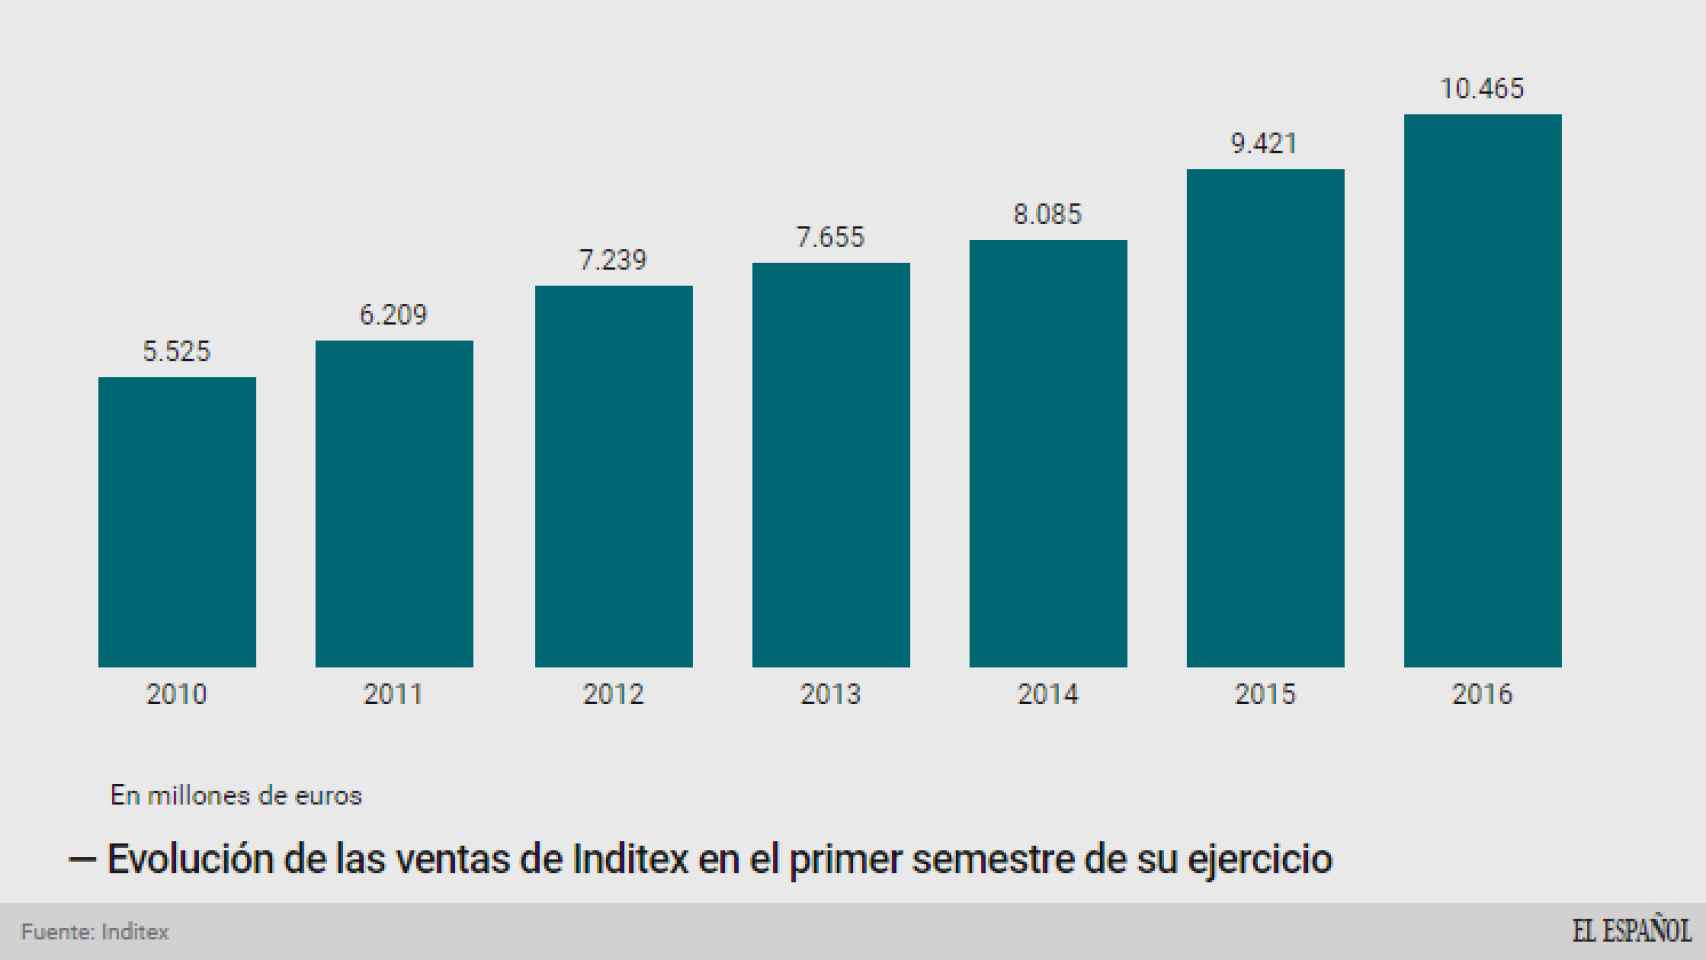 Evolución de las ventas de Inditex en el primer semestre.